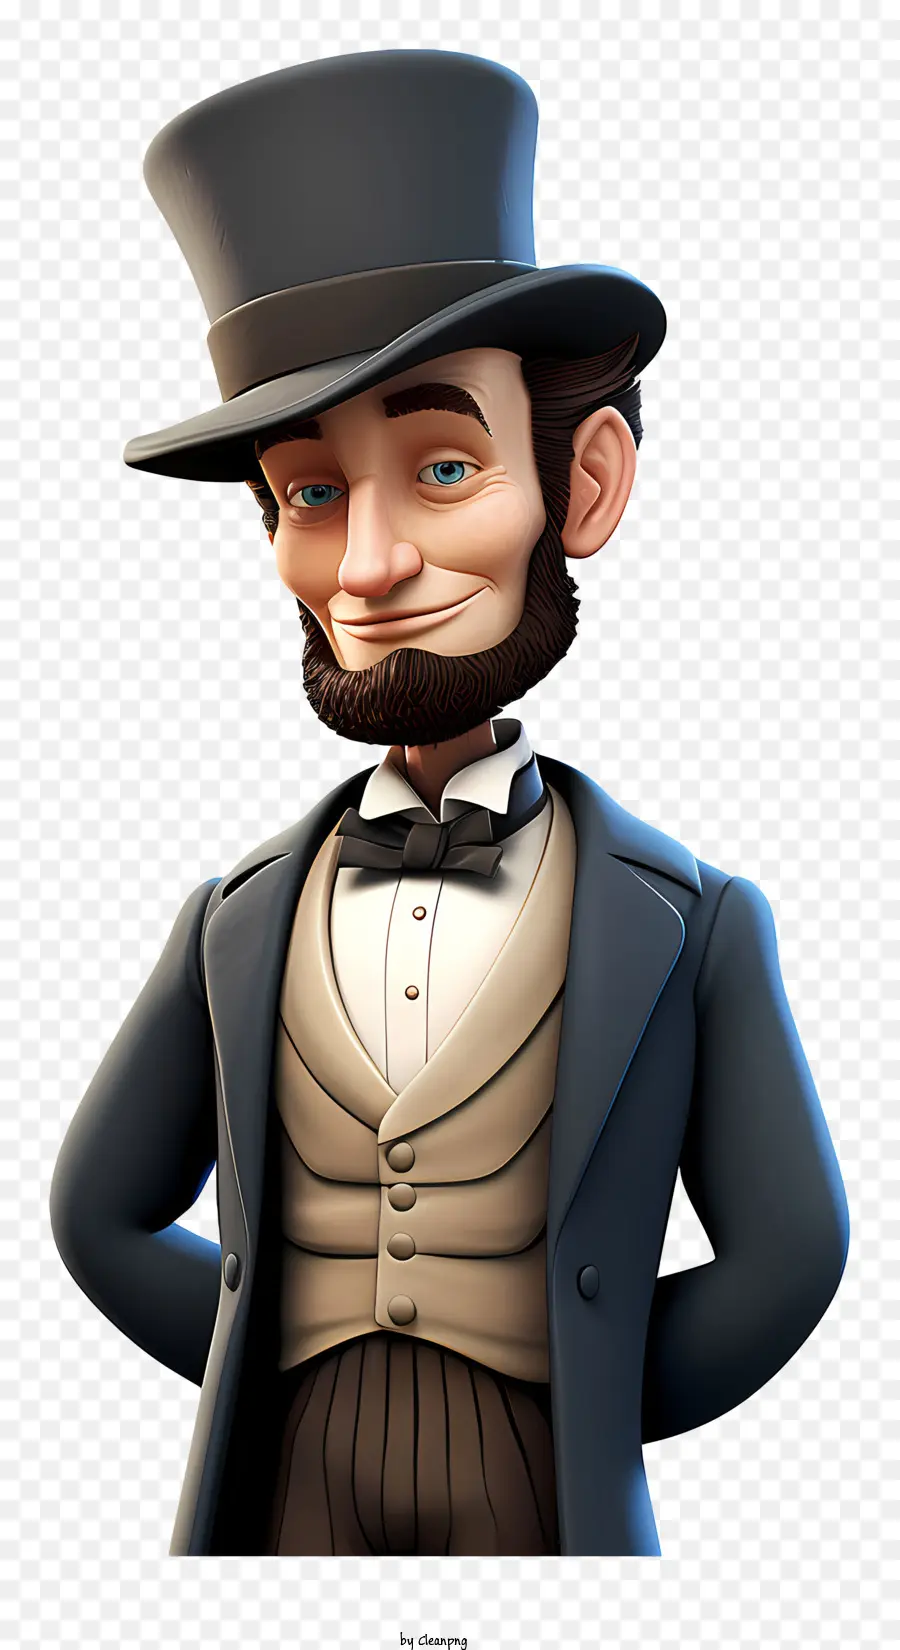 Mũ cao cấp - Hình ảnh hoạt hình của Stern Abraham Lincoln trong Top Hat